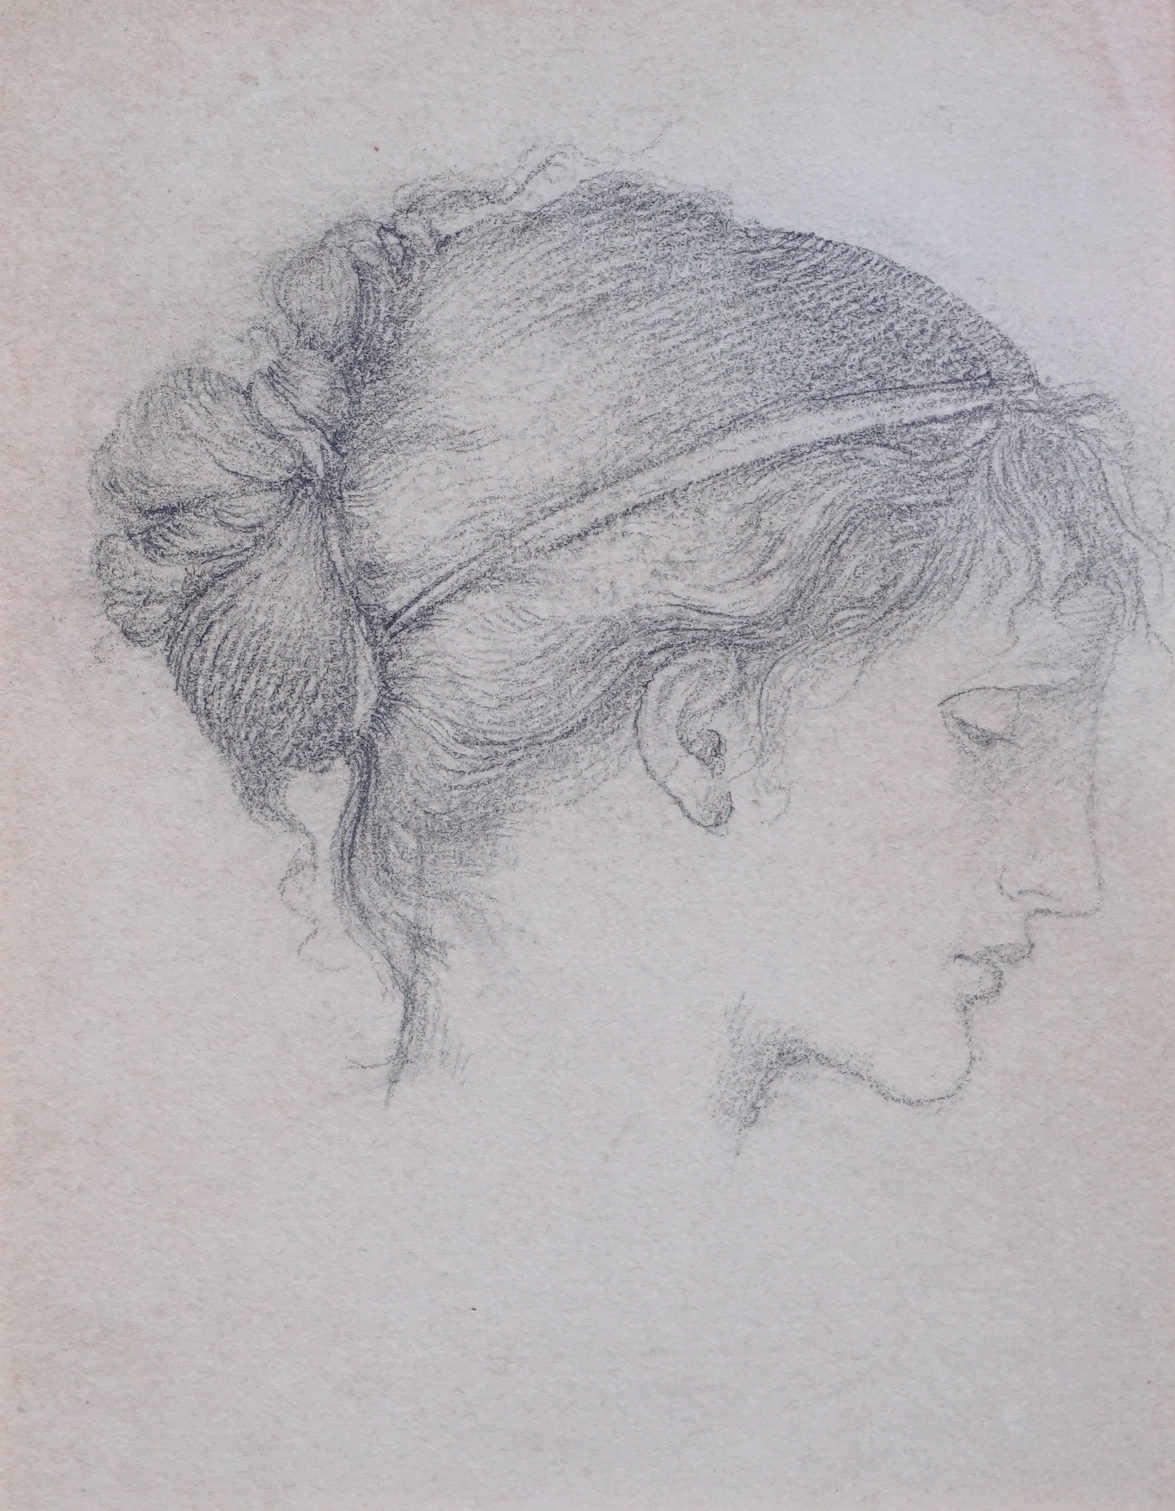 Sir Edward Coley Burne-Jones, Bt; A.R.A; R.W.S. (British, 1883-1898), Head of a girl, possibly Maria Zambaco, pencil on paper, 13.5 x 10.5cm